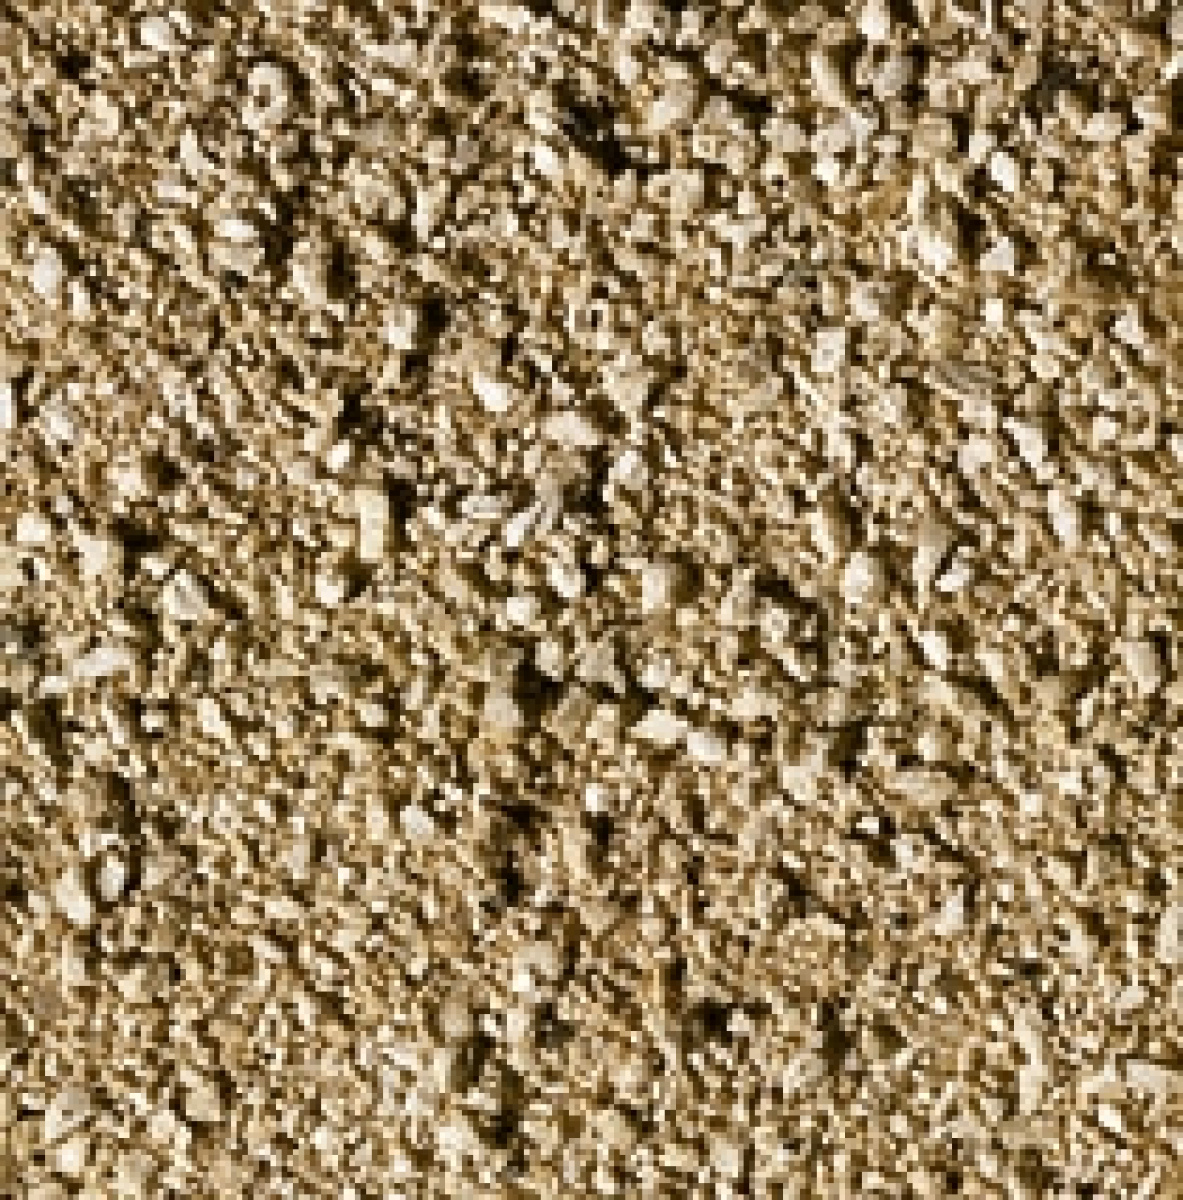 NOCH 95800 (Woodland C1270) Talus (Felsbruch) fein, beige